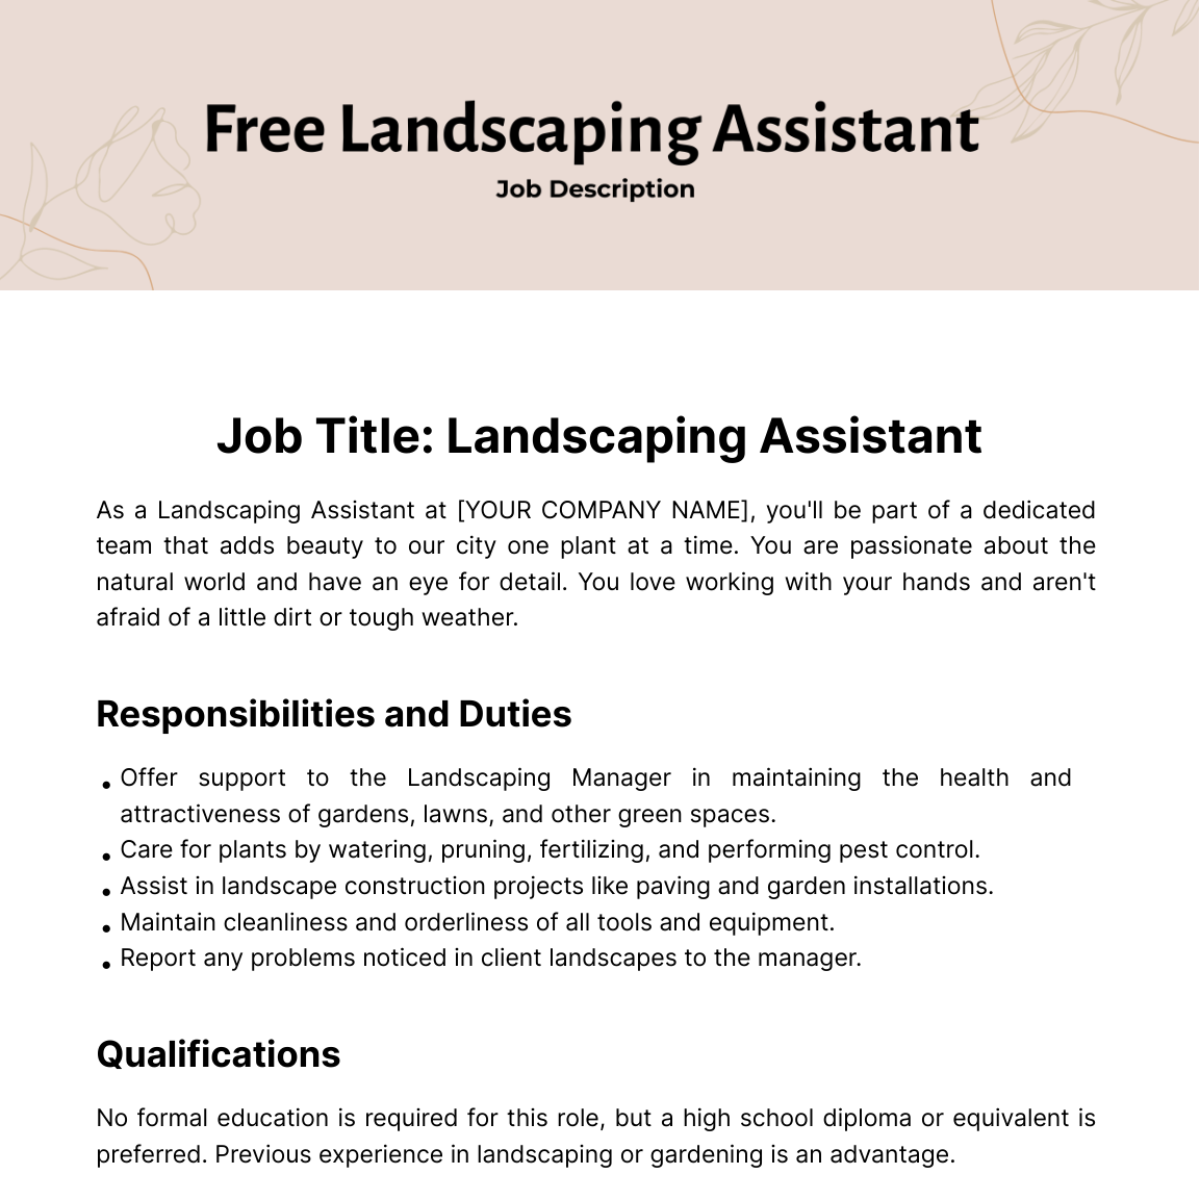 Free Landscaping Assistant Job Description Template